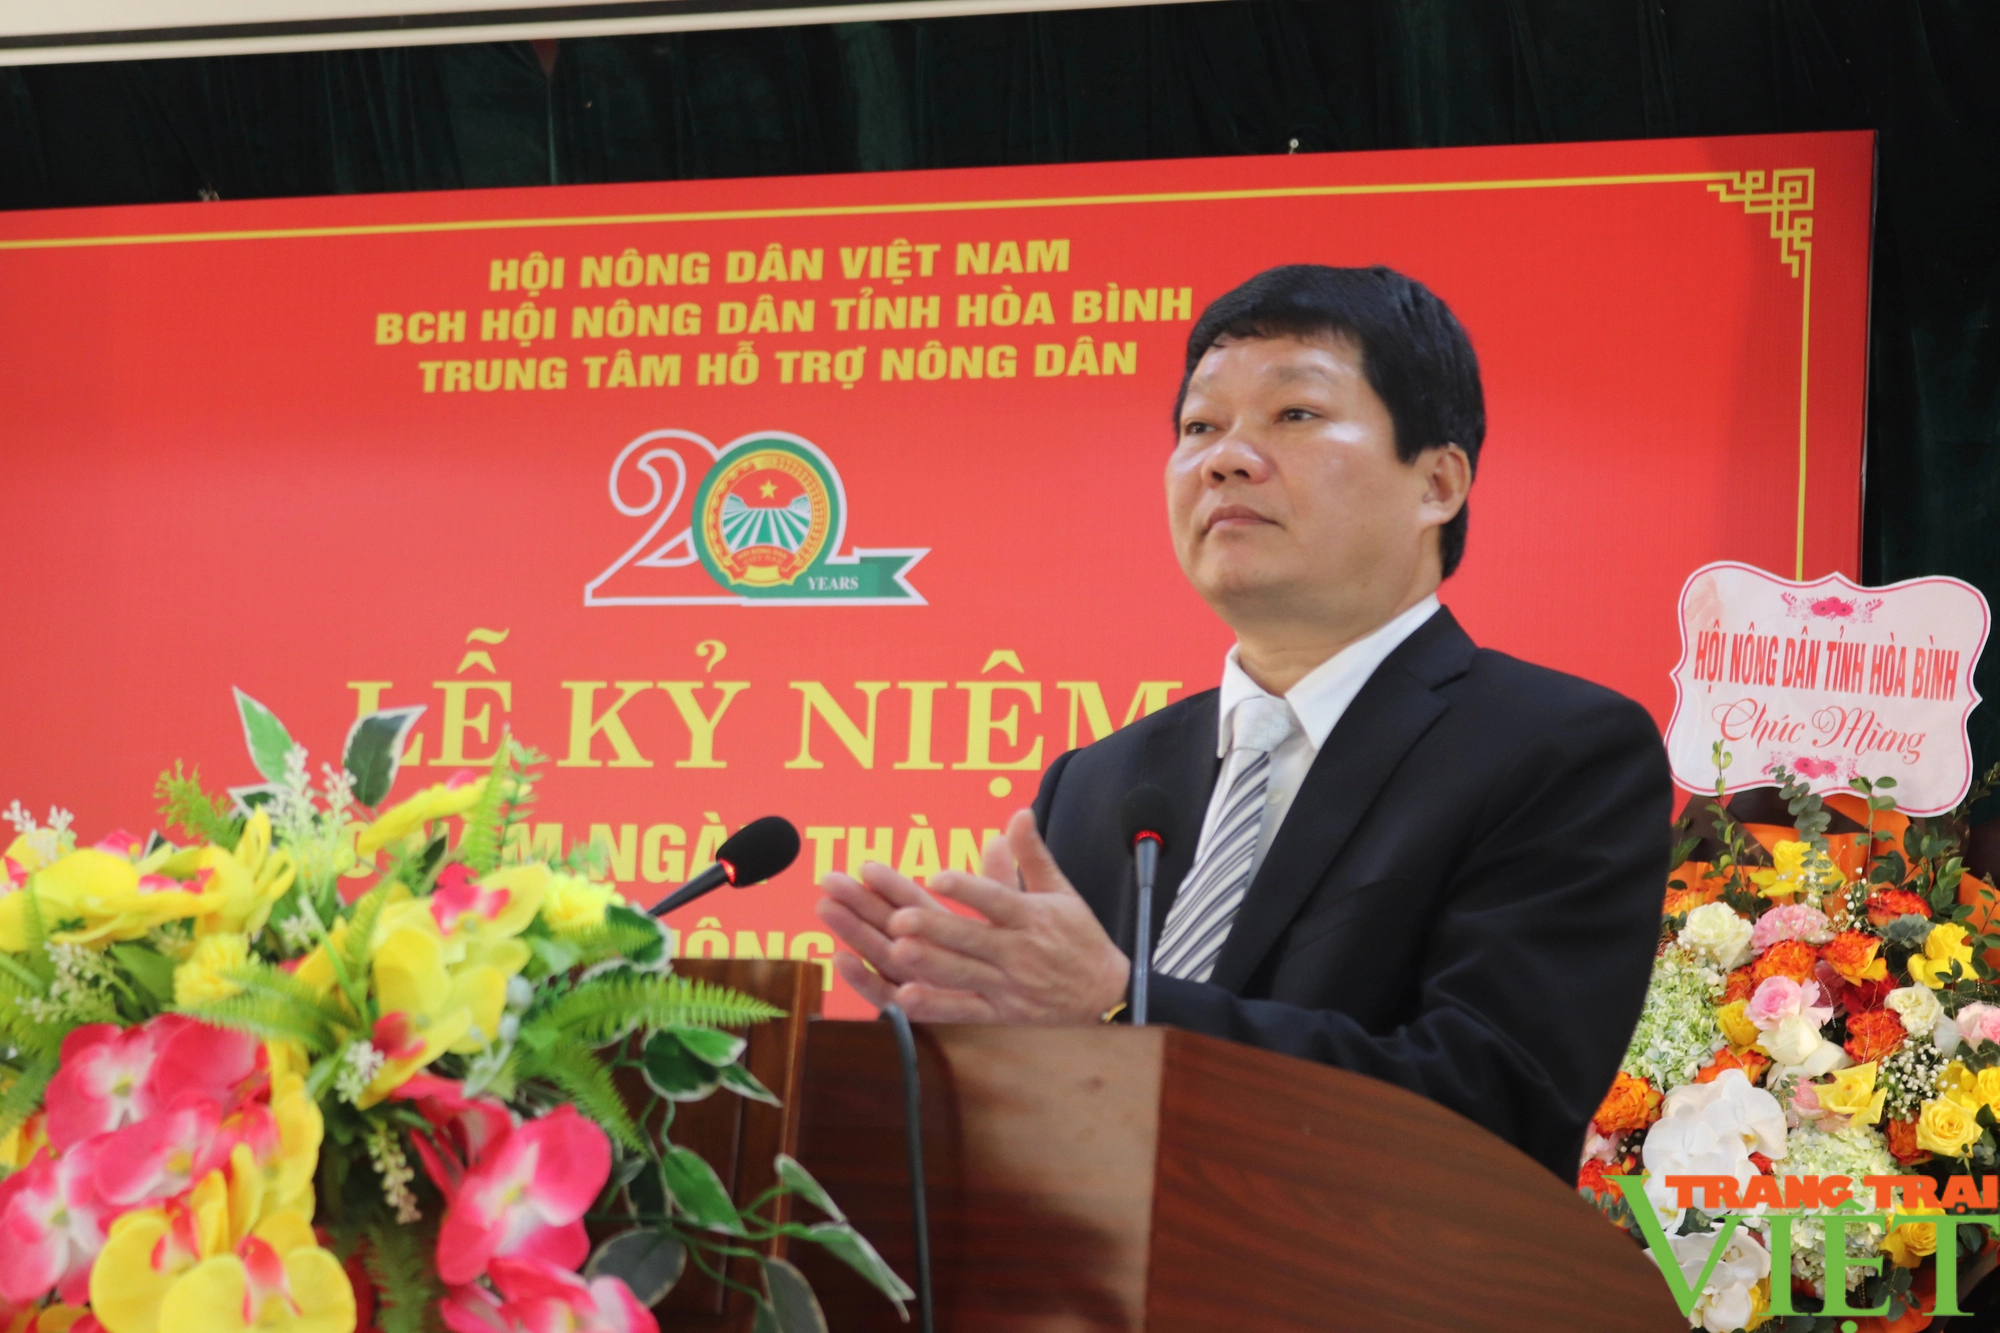 Kỷ niệm 20 năm thành lập Trung tâm hỗ trợ nông dân tỉnh Hòa Bình- Ảnh 3.